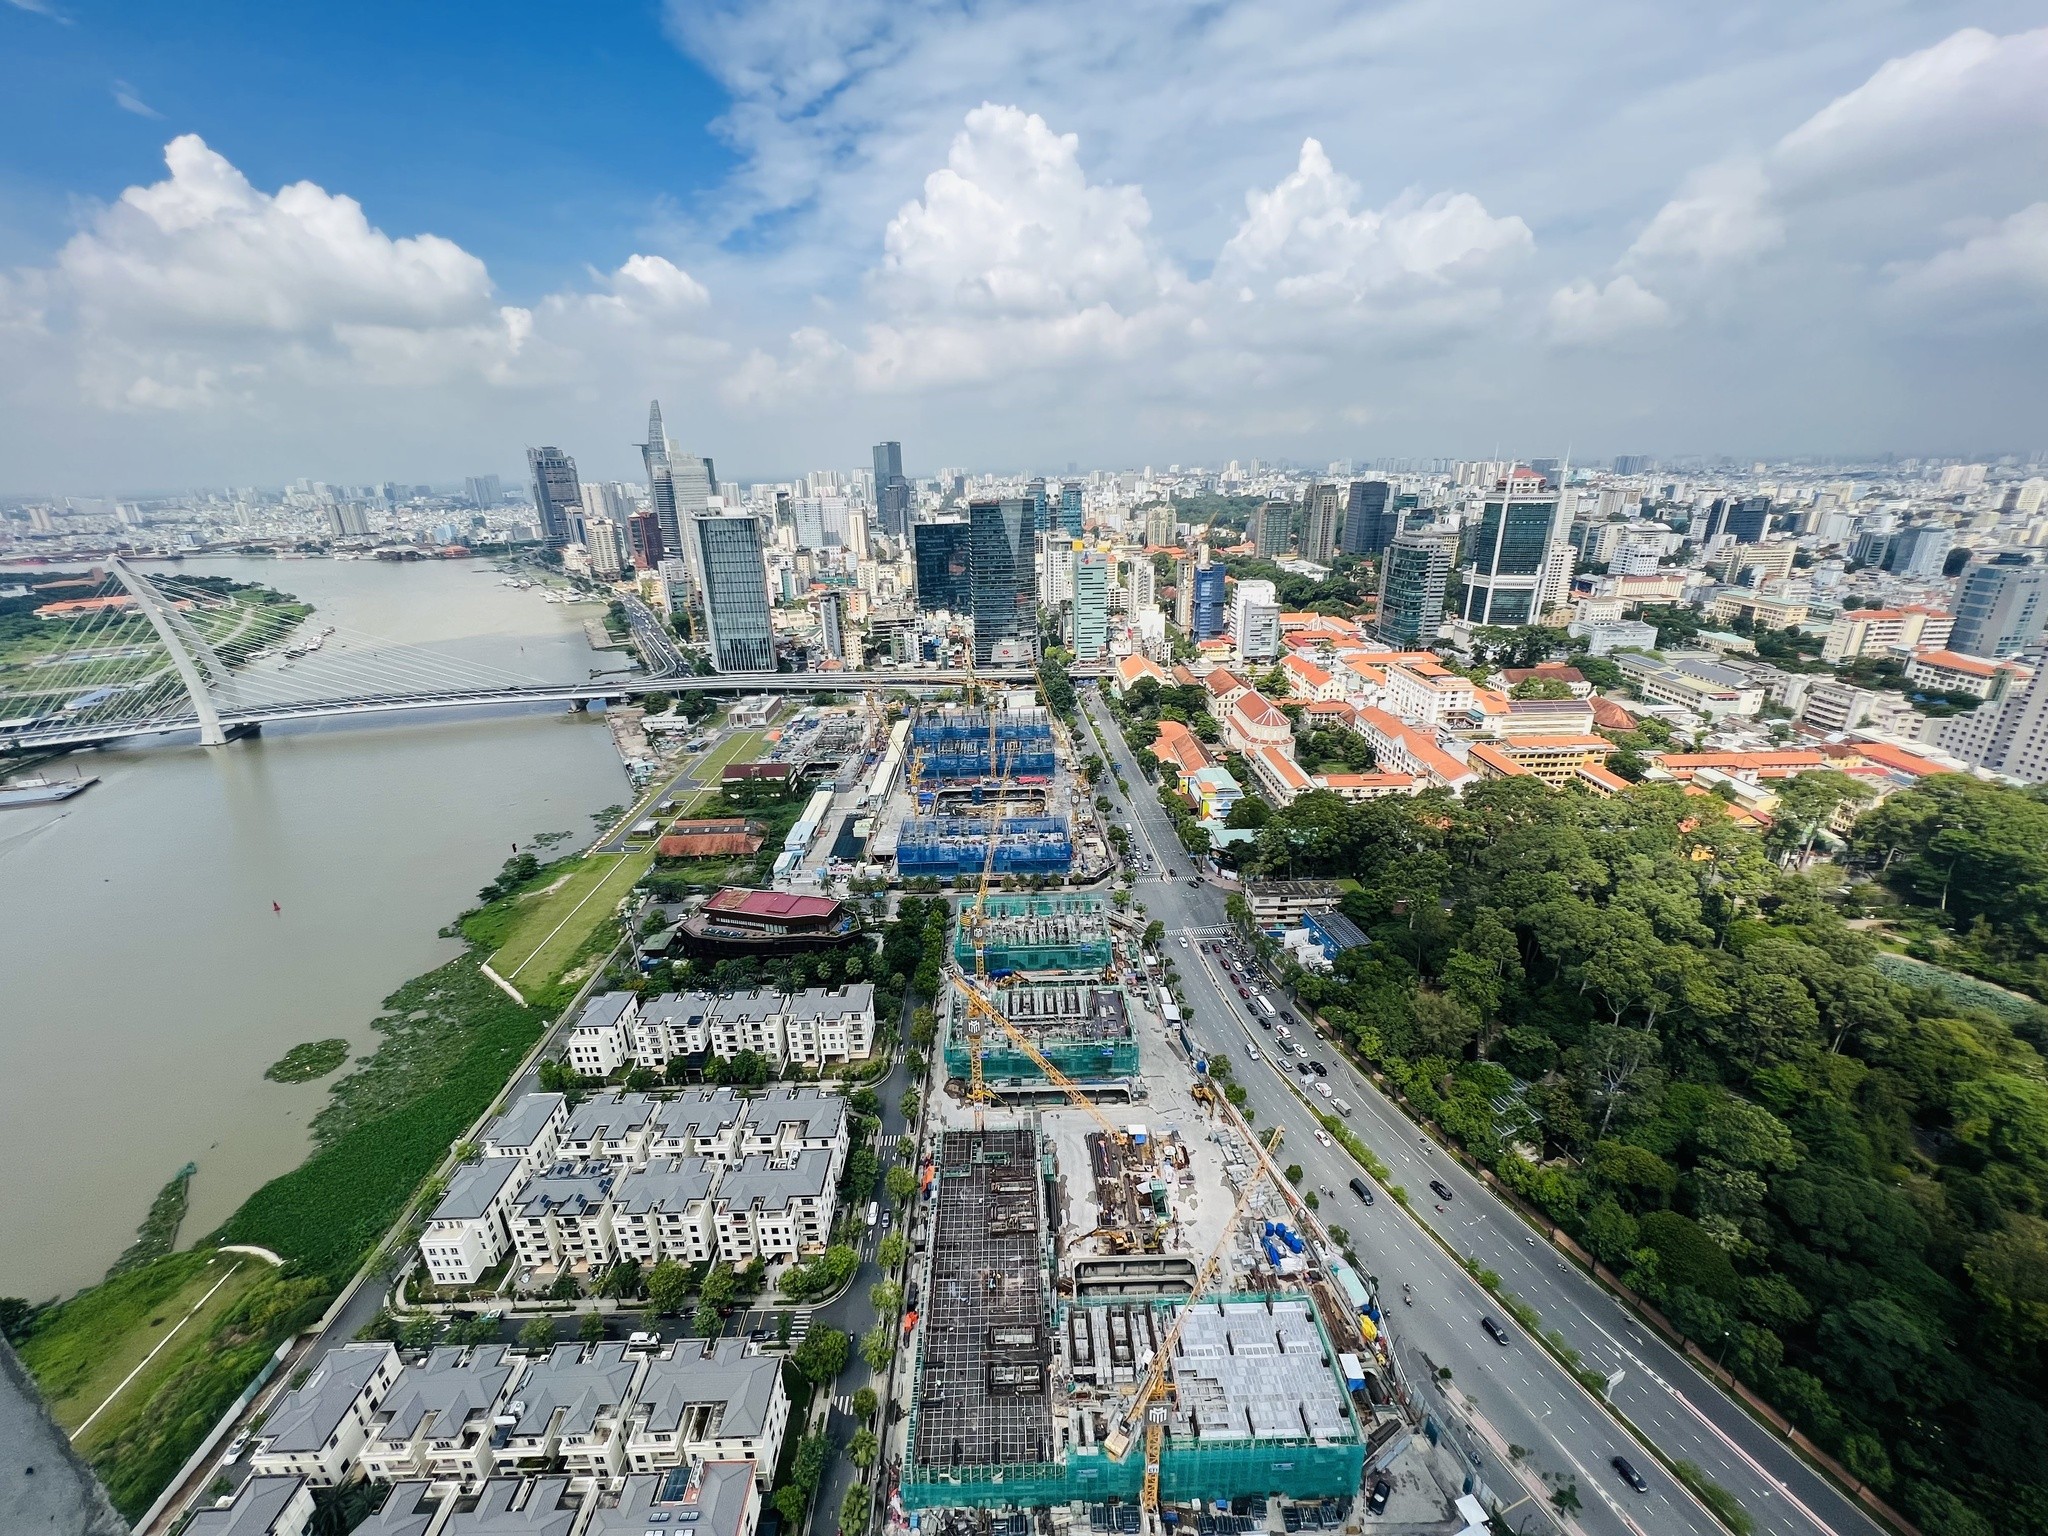 
Giá trị đầu tư vào bất động sản Việt Nam tính riêng năm 2018 đã đạt gần 7 tỷ USD
